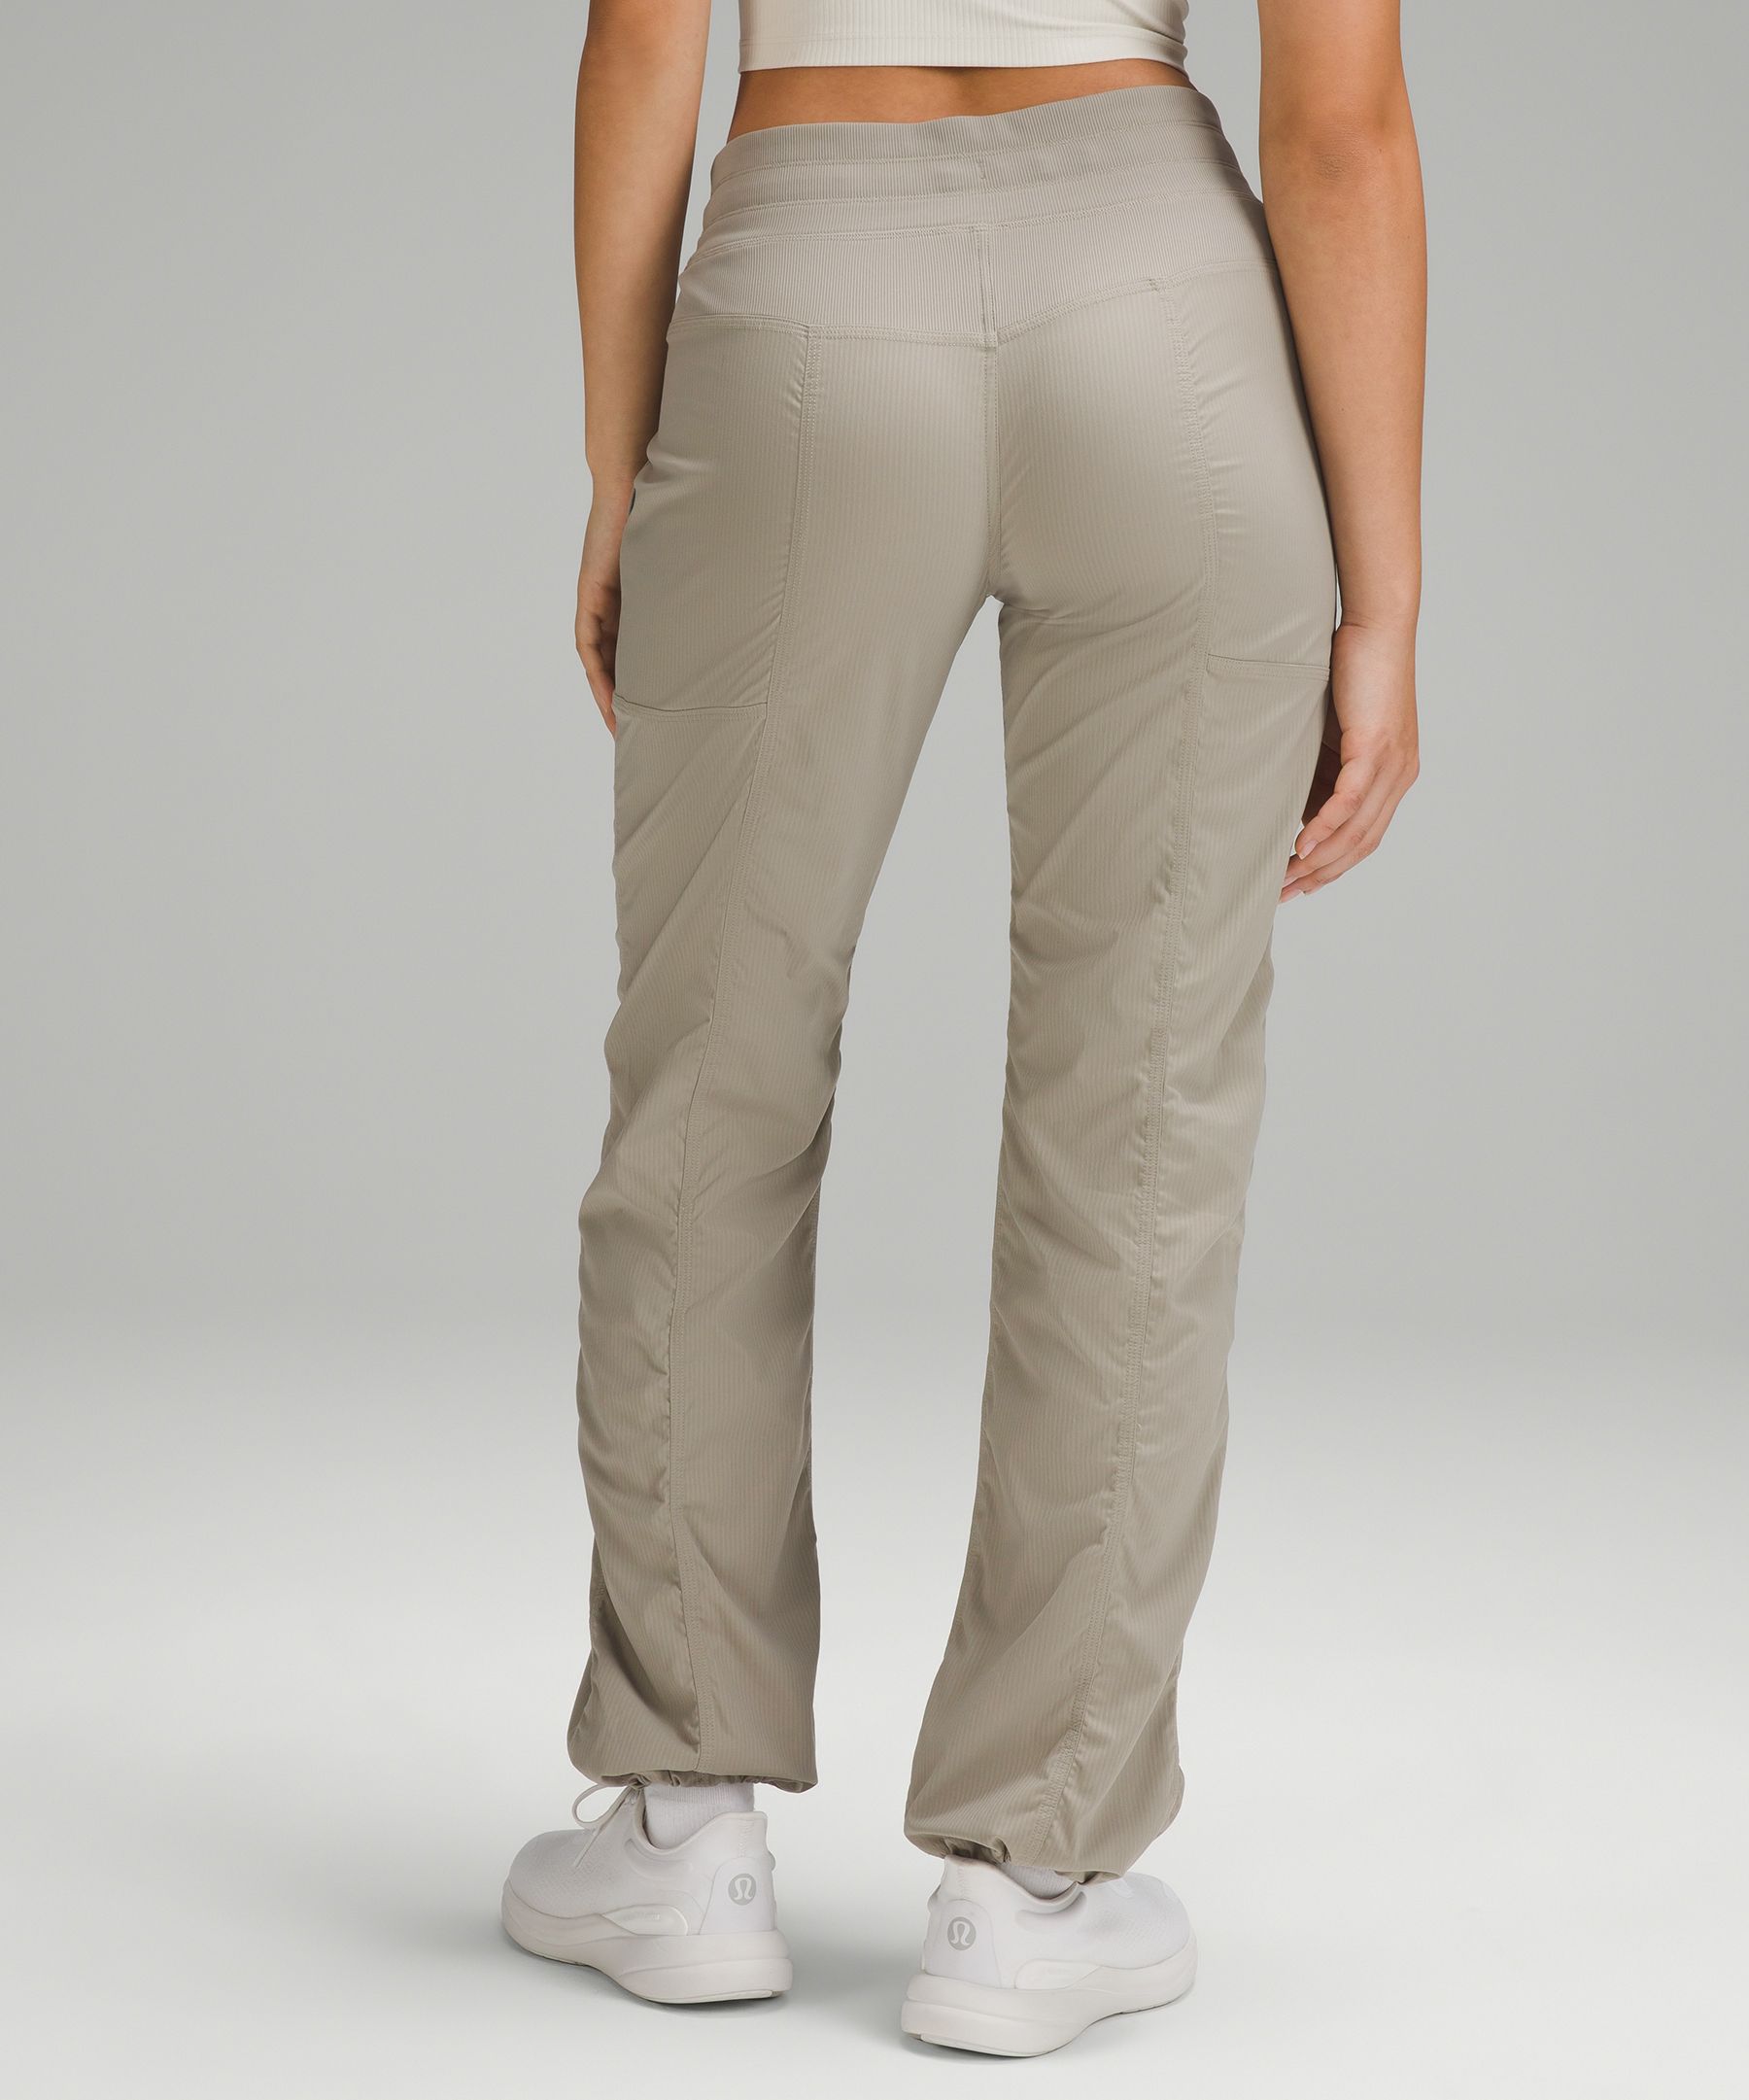 lululemon lululemon Dance Studio Mid-Rise Full Length Pant *Online Only, Women's Trousers